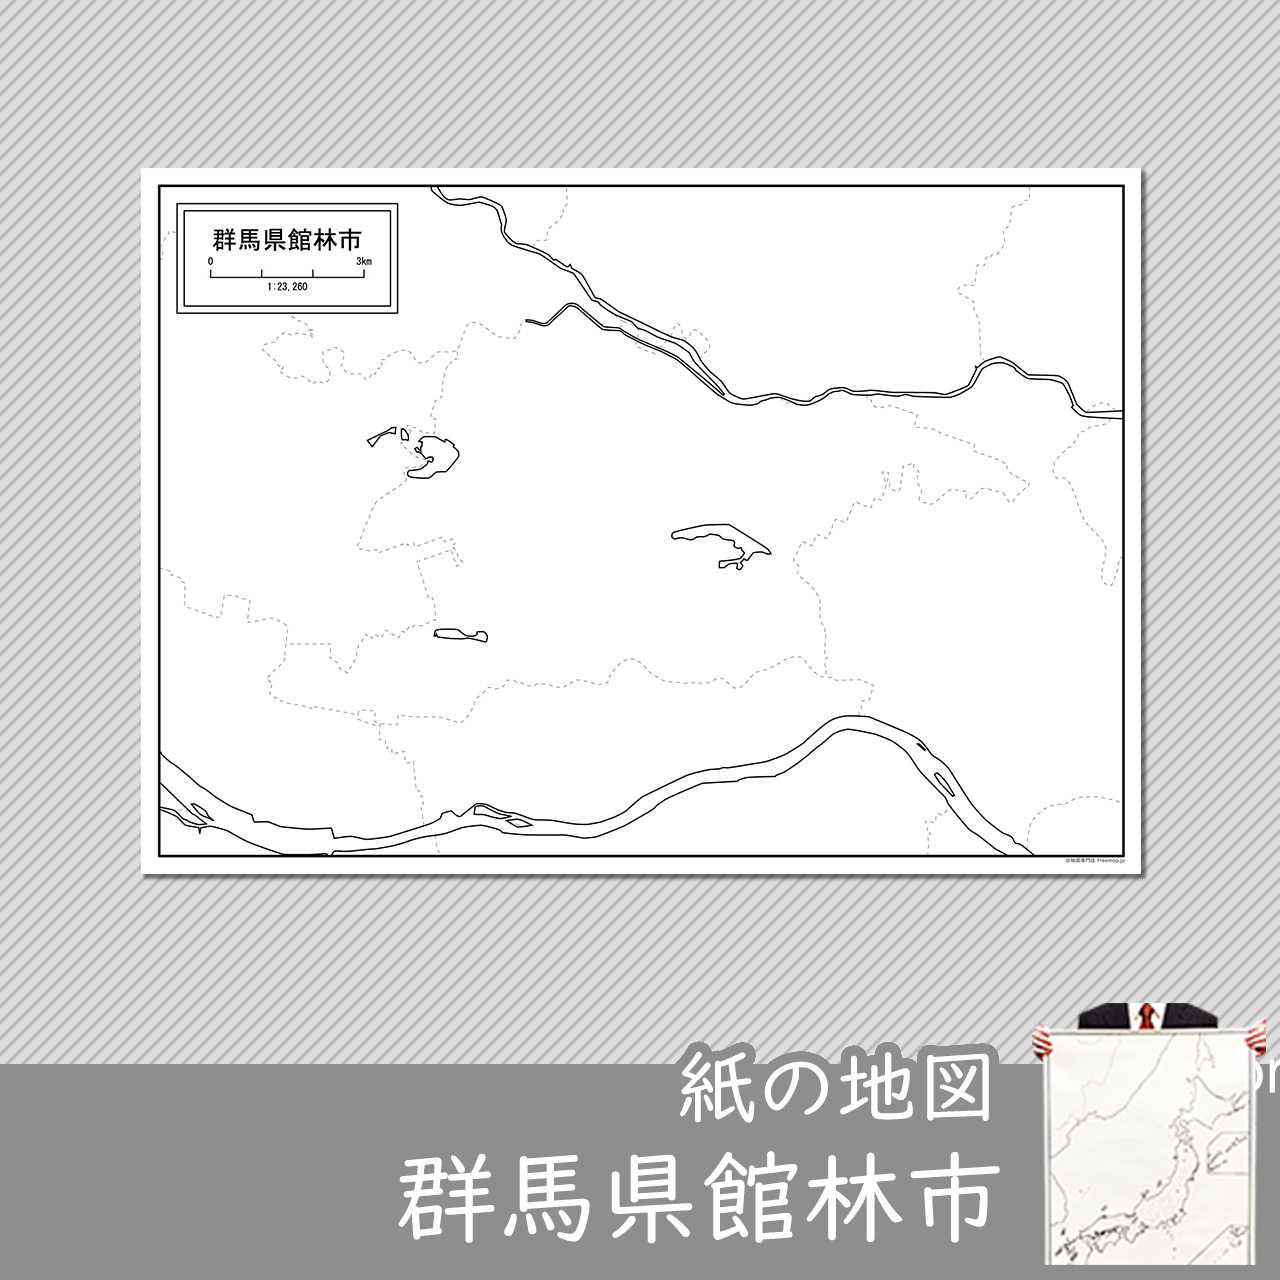 館林市の紙の白地図のサムネイル